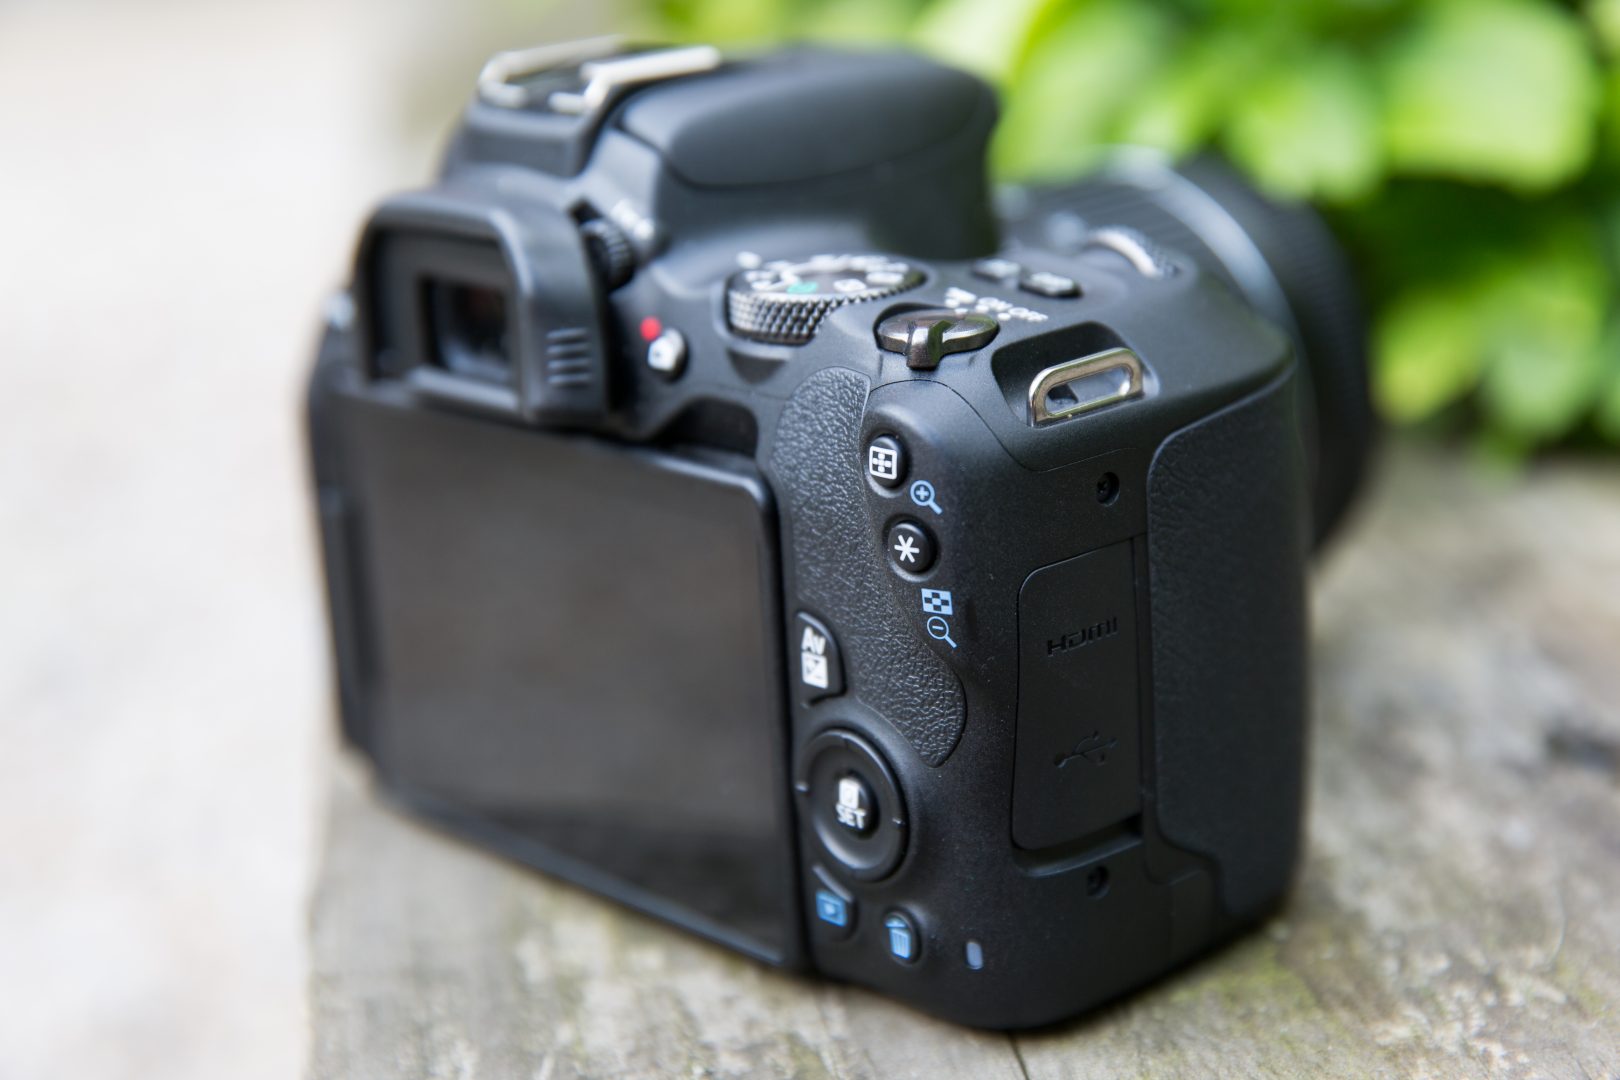 Ֆայն. գնեք Canon EOS 200D բարձրորակ ֆոտոխցիկը և ստացեք 29,000 դրամ քեշբեք վաուչեր